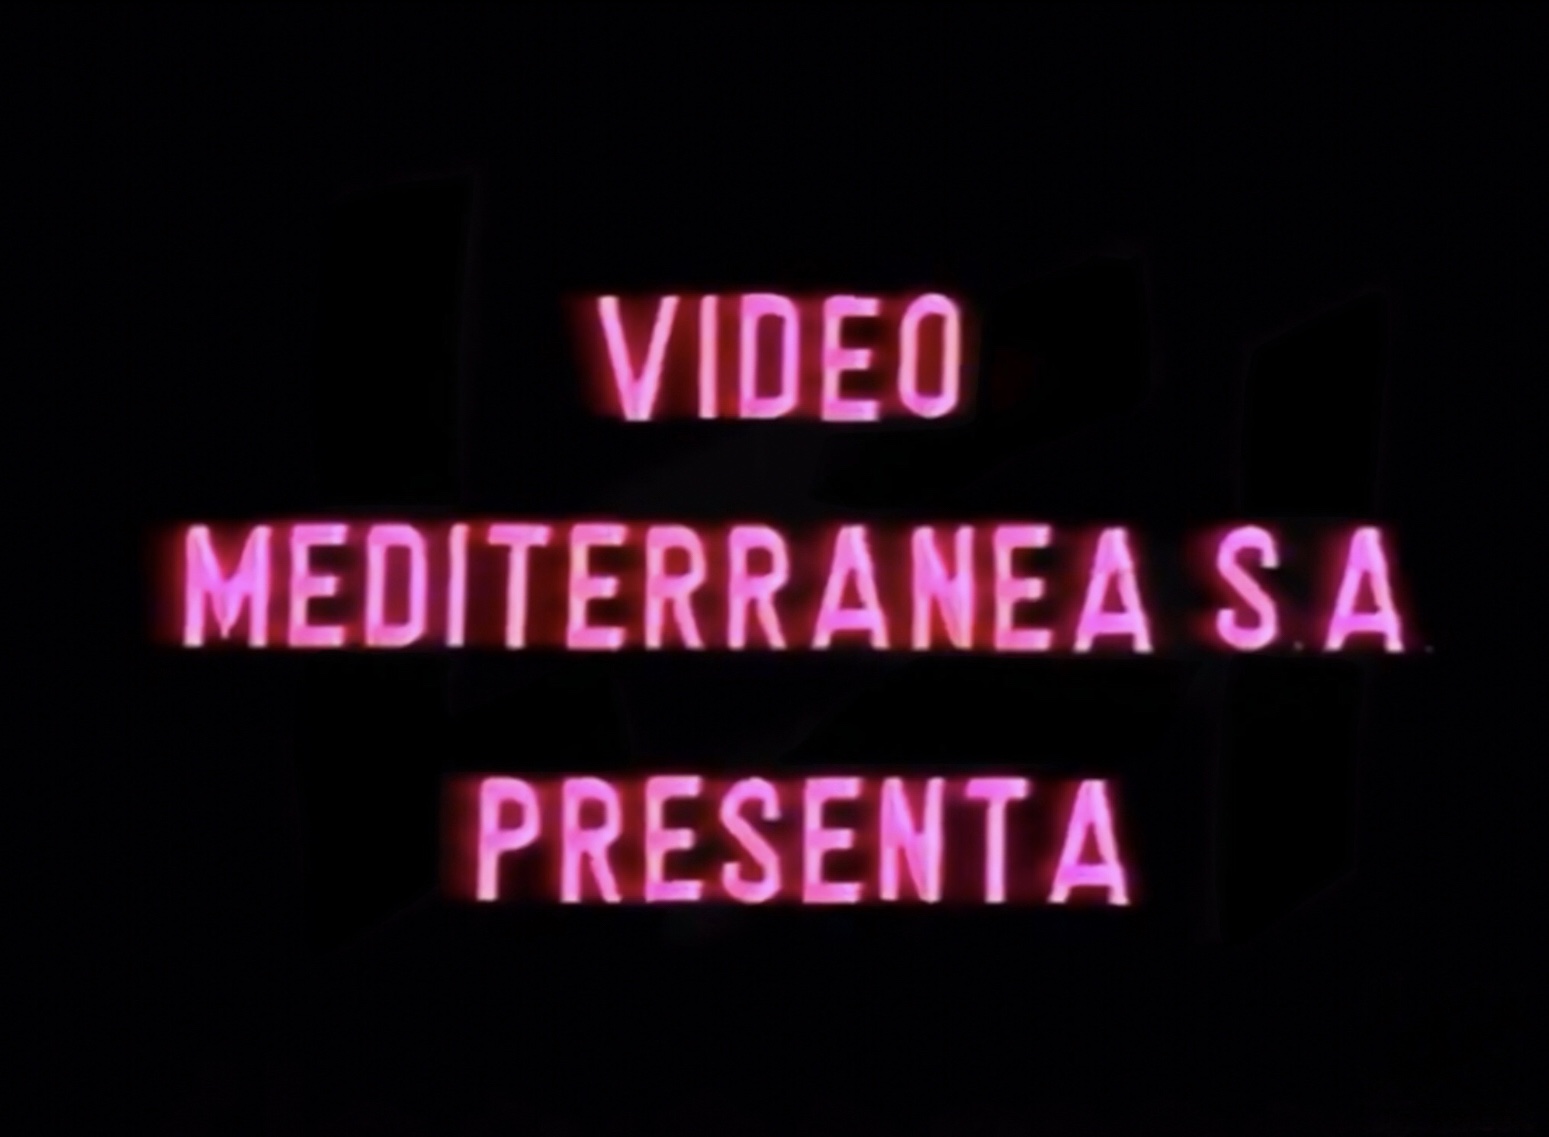 Video Mediterranea S.A. (Non-damaged)